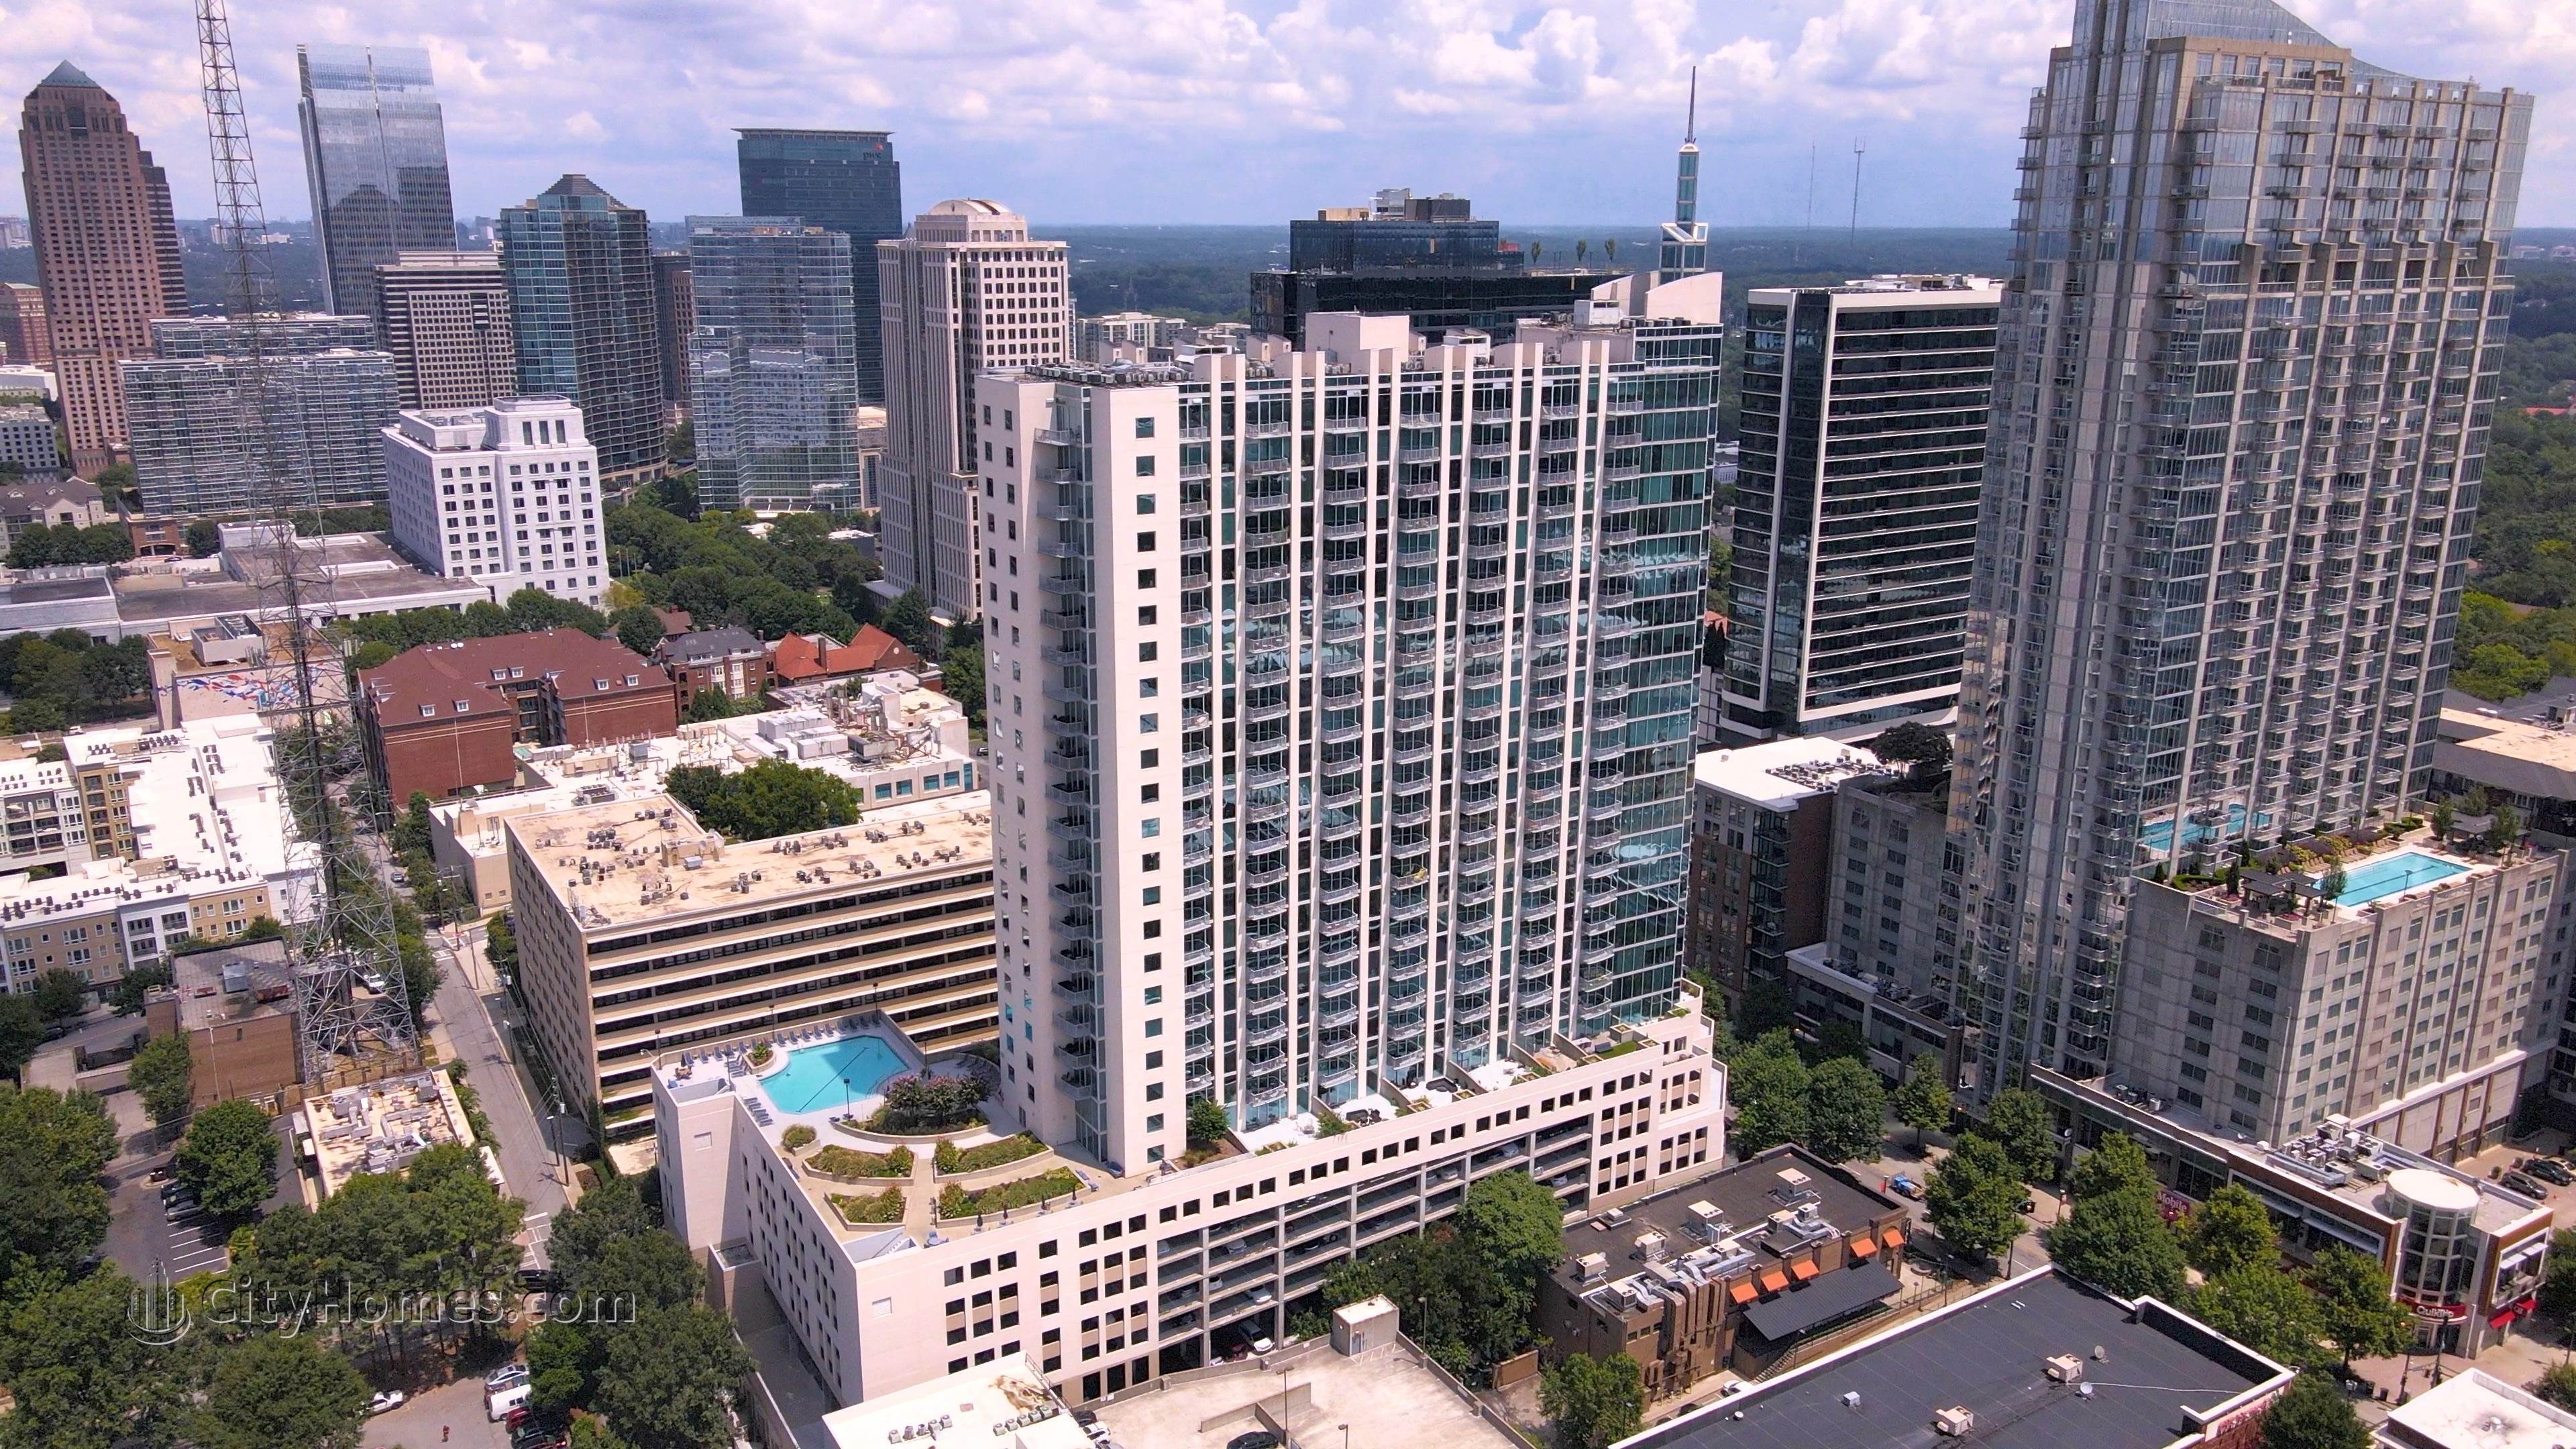 4. Spire Condominiums edificio en 860 Peachtree St NE, Greater Midtown, Atlanta, GA 30308